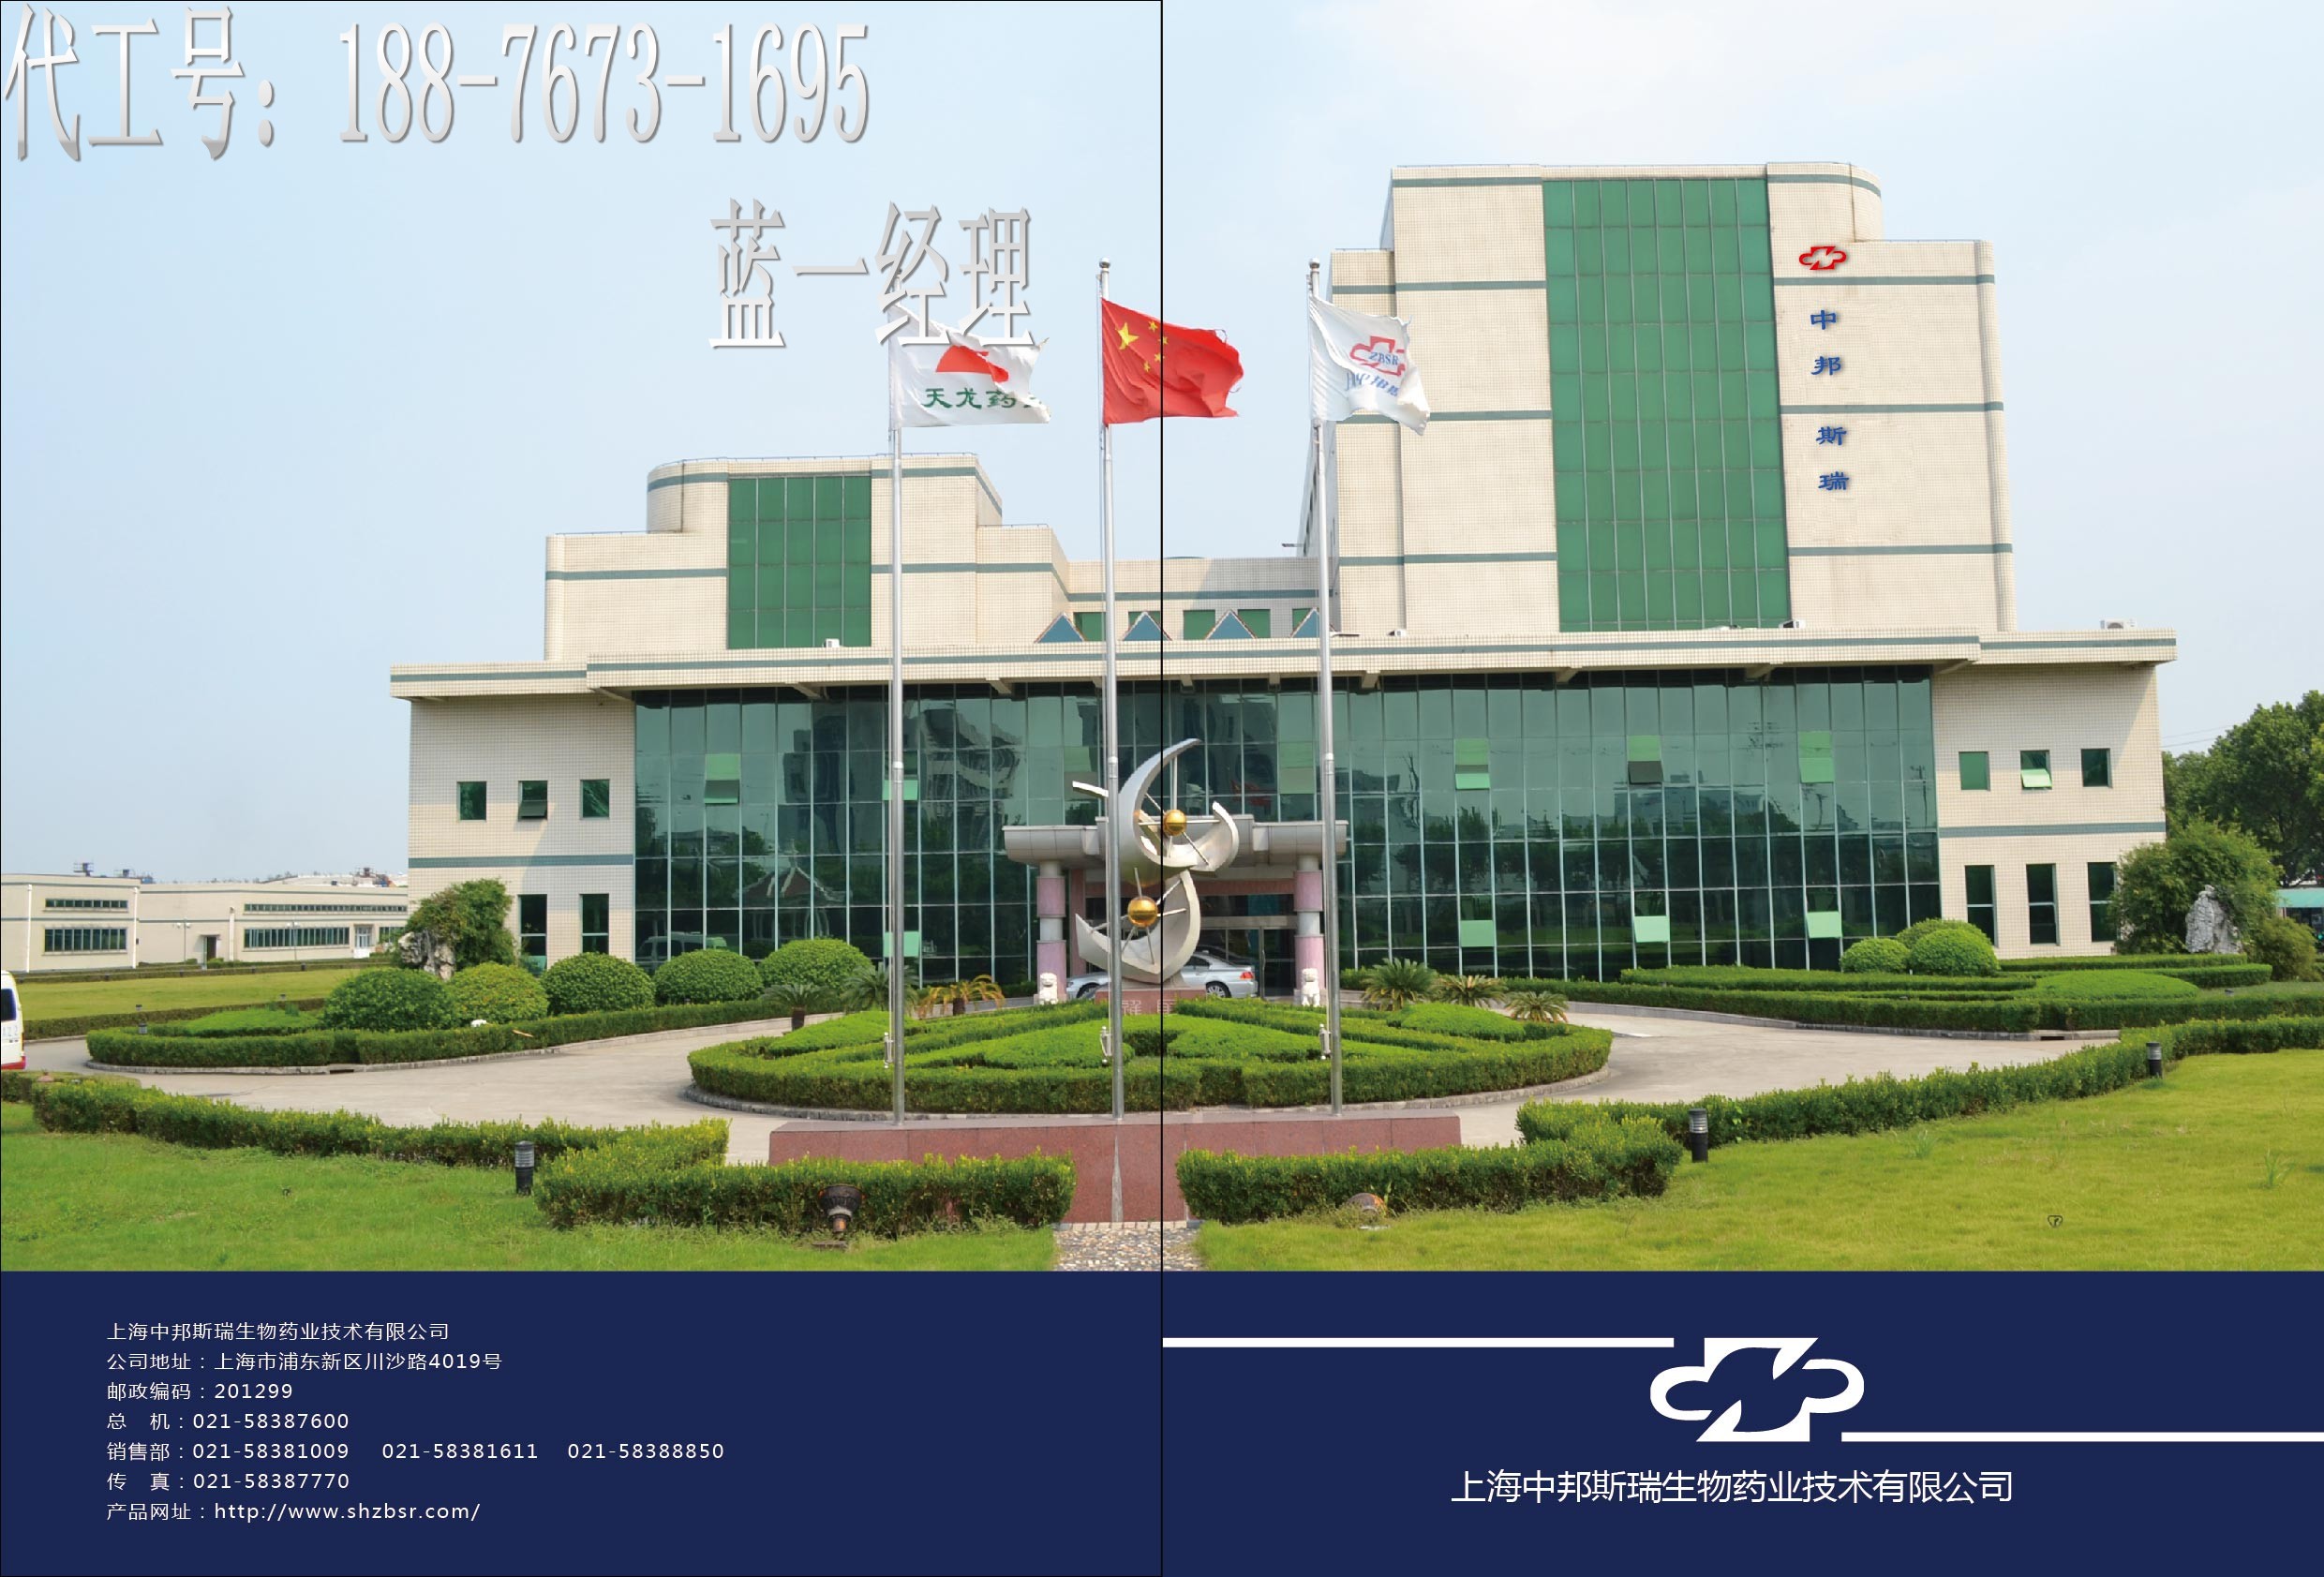 上海中邦斯瑞生物药业技术有限公司订单部